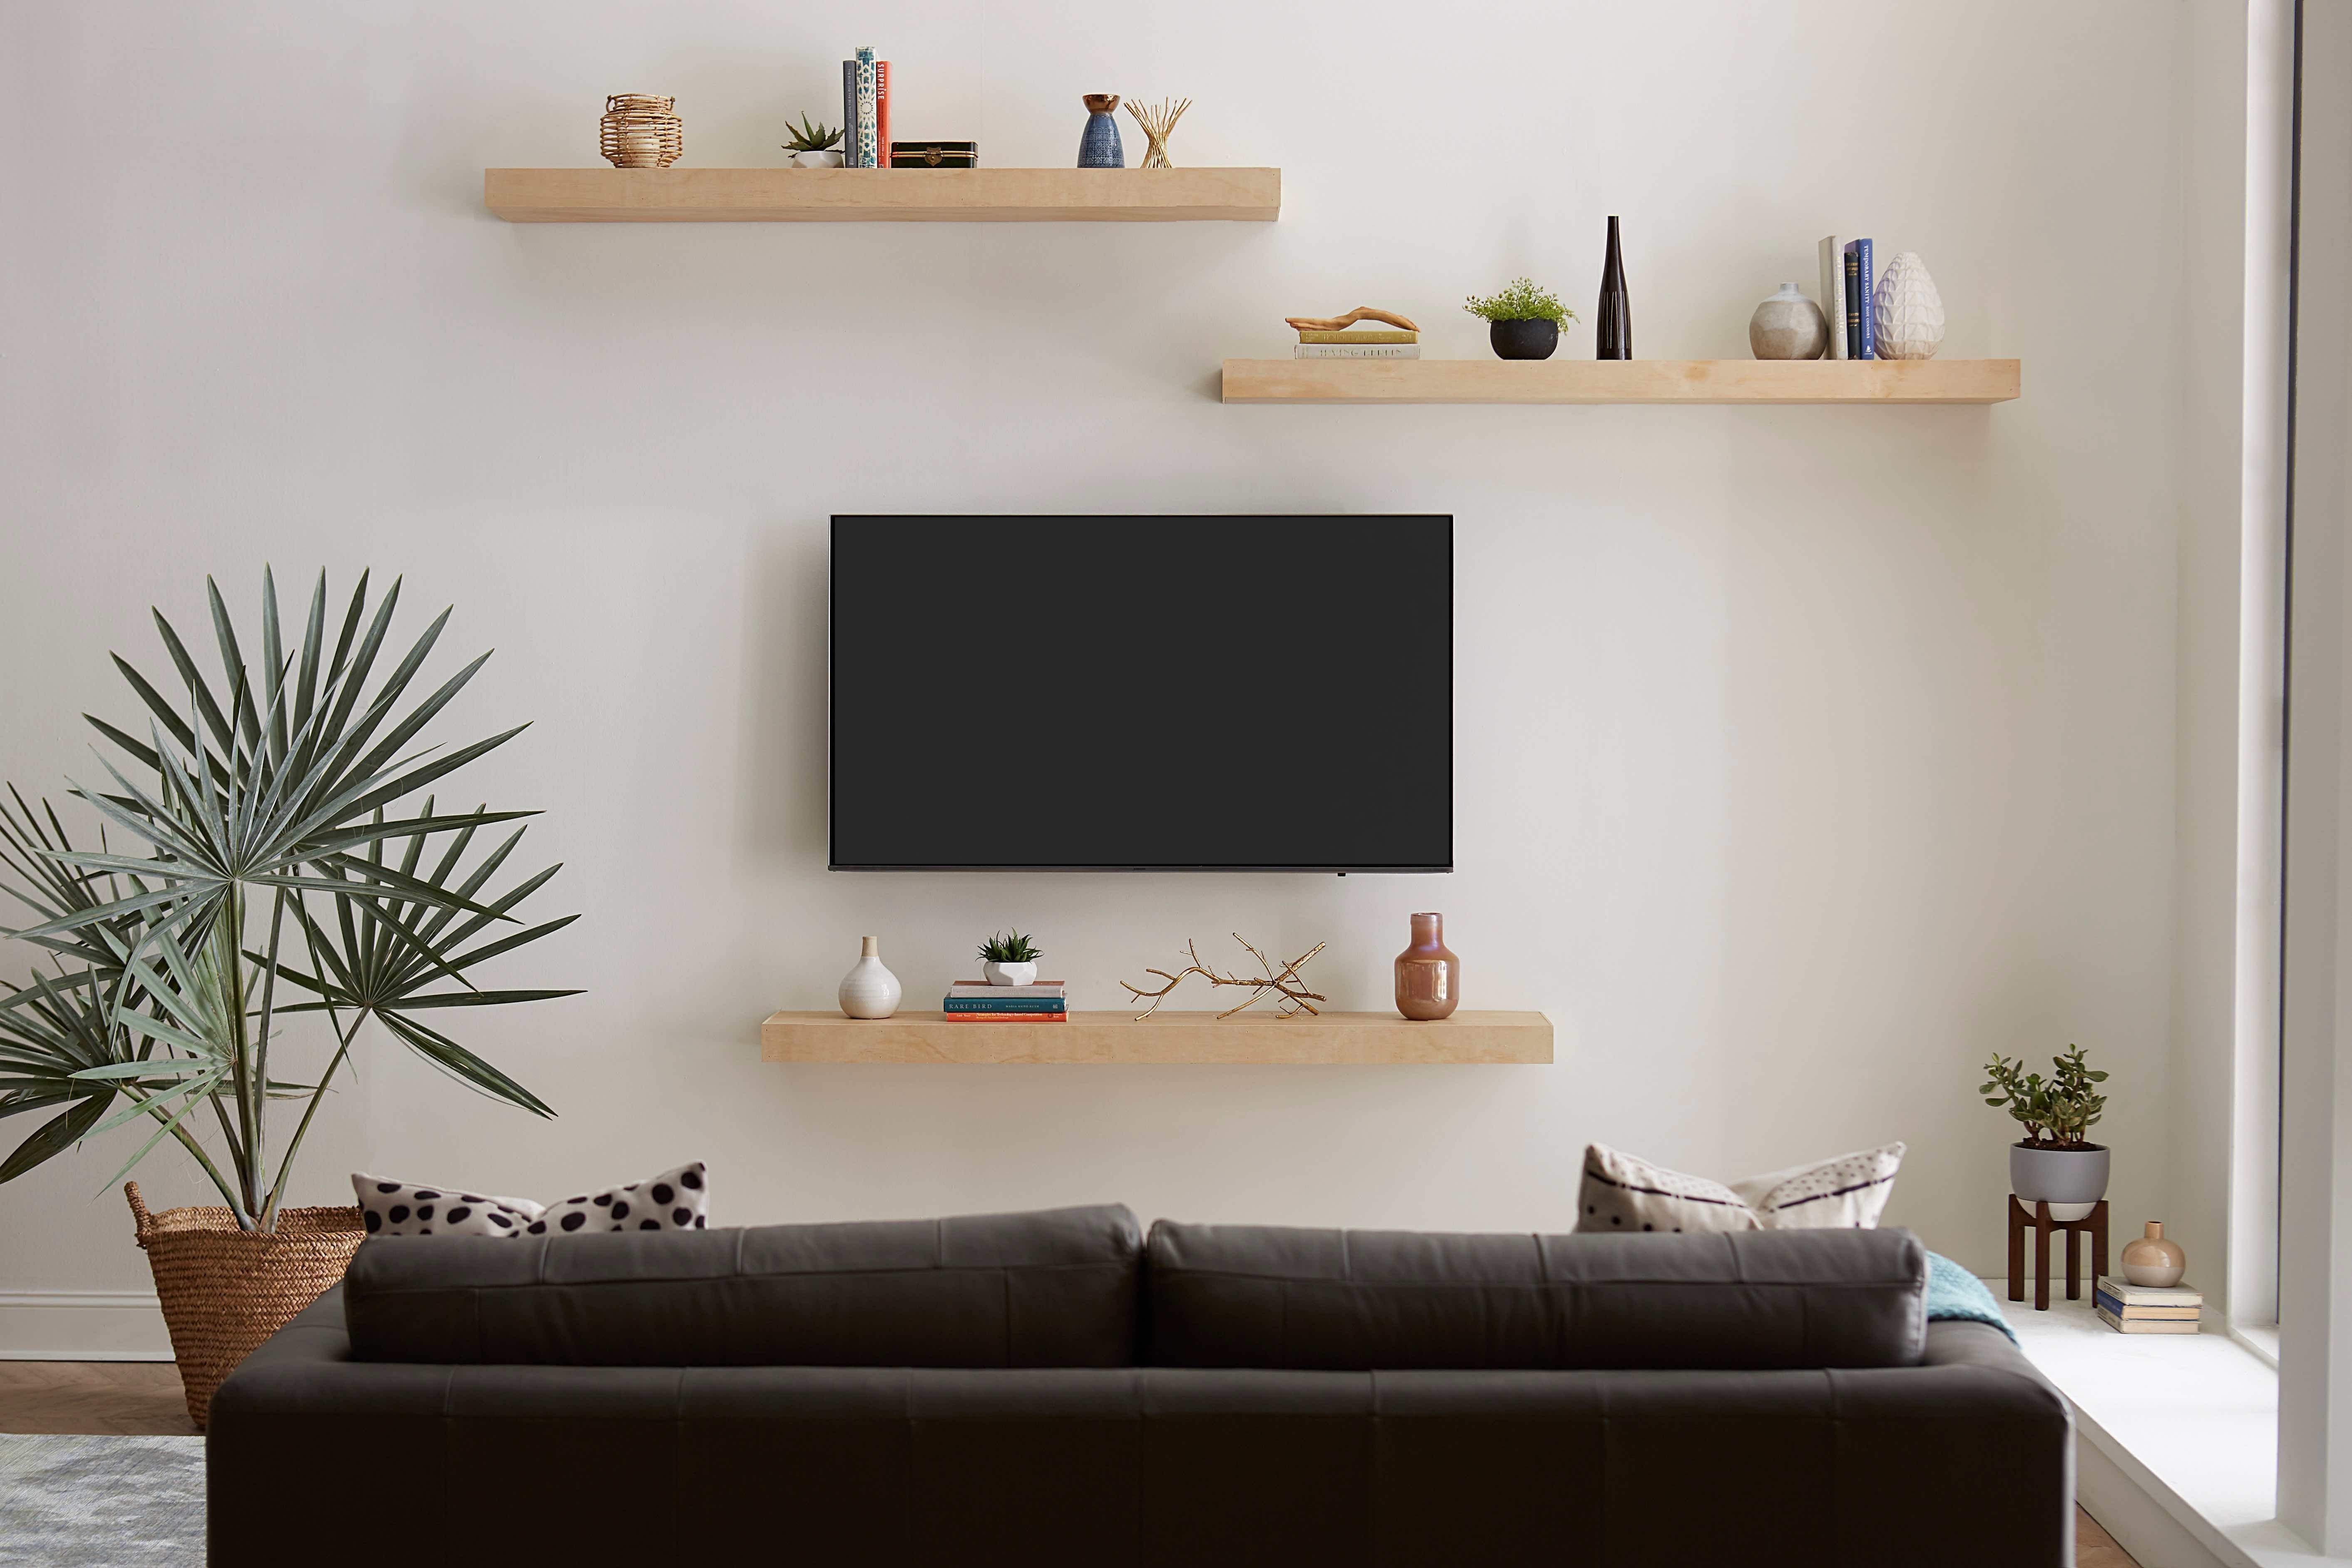 Что лучше повесить телевизор на стену или поставить на тумбу?